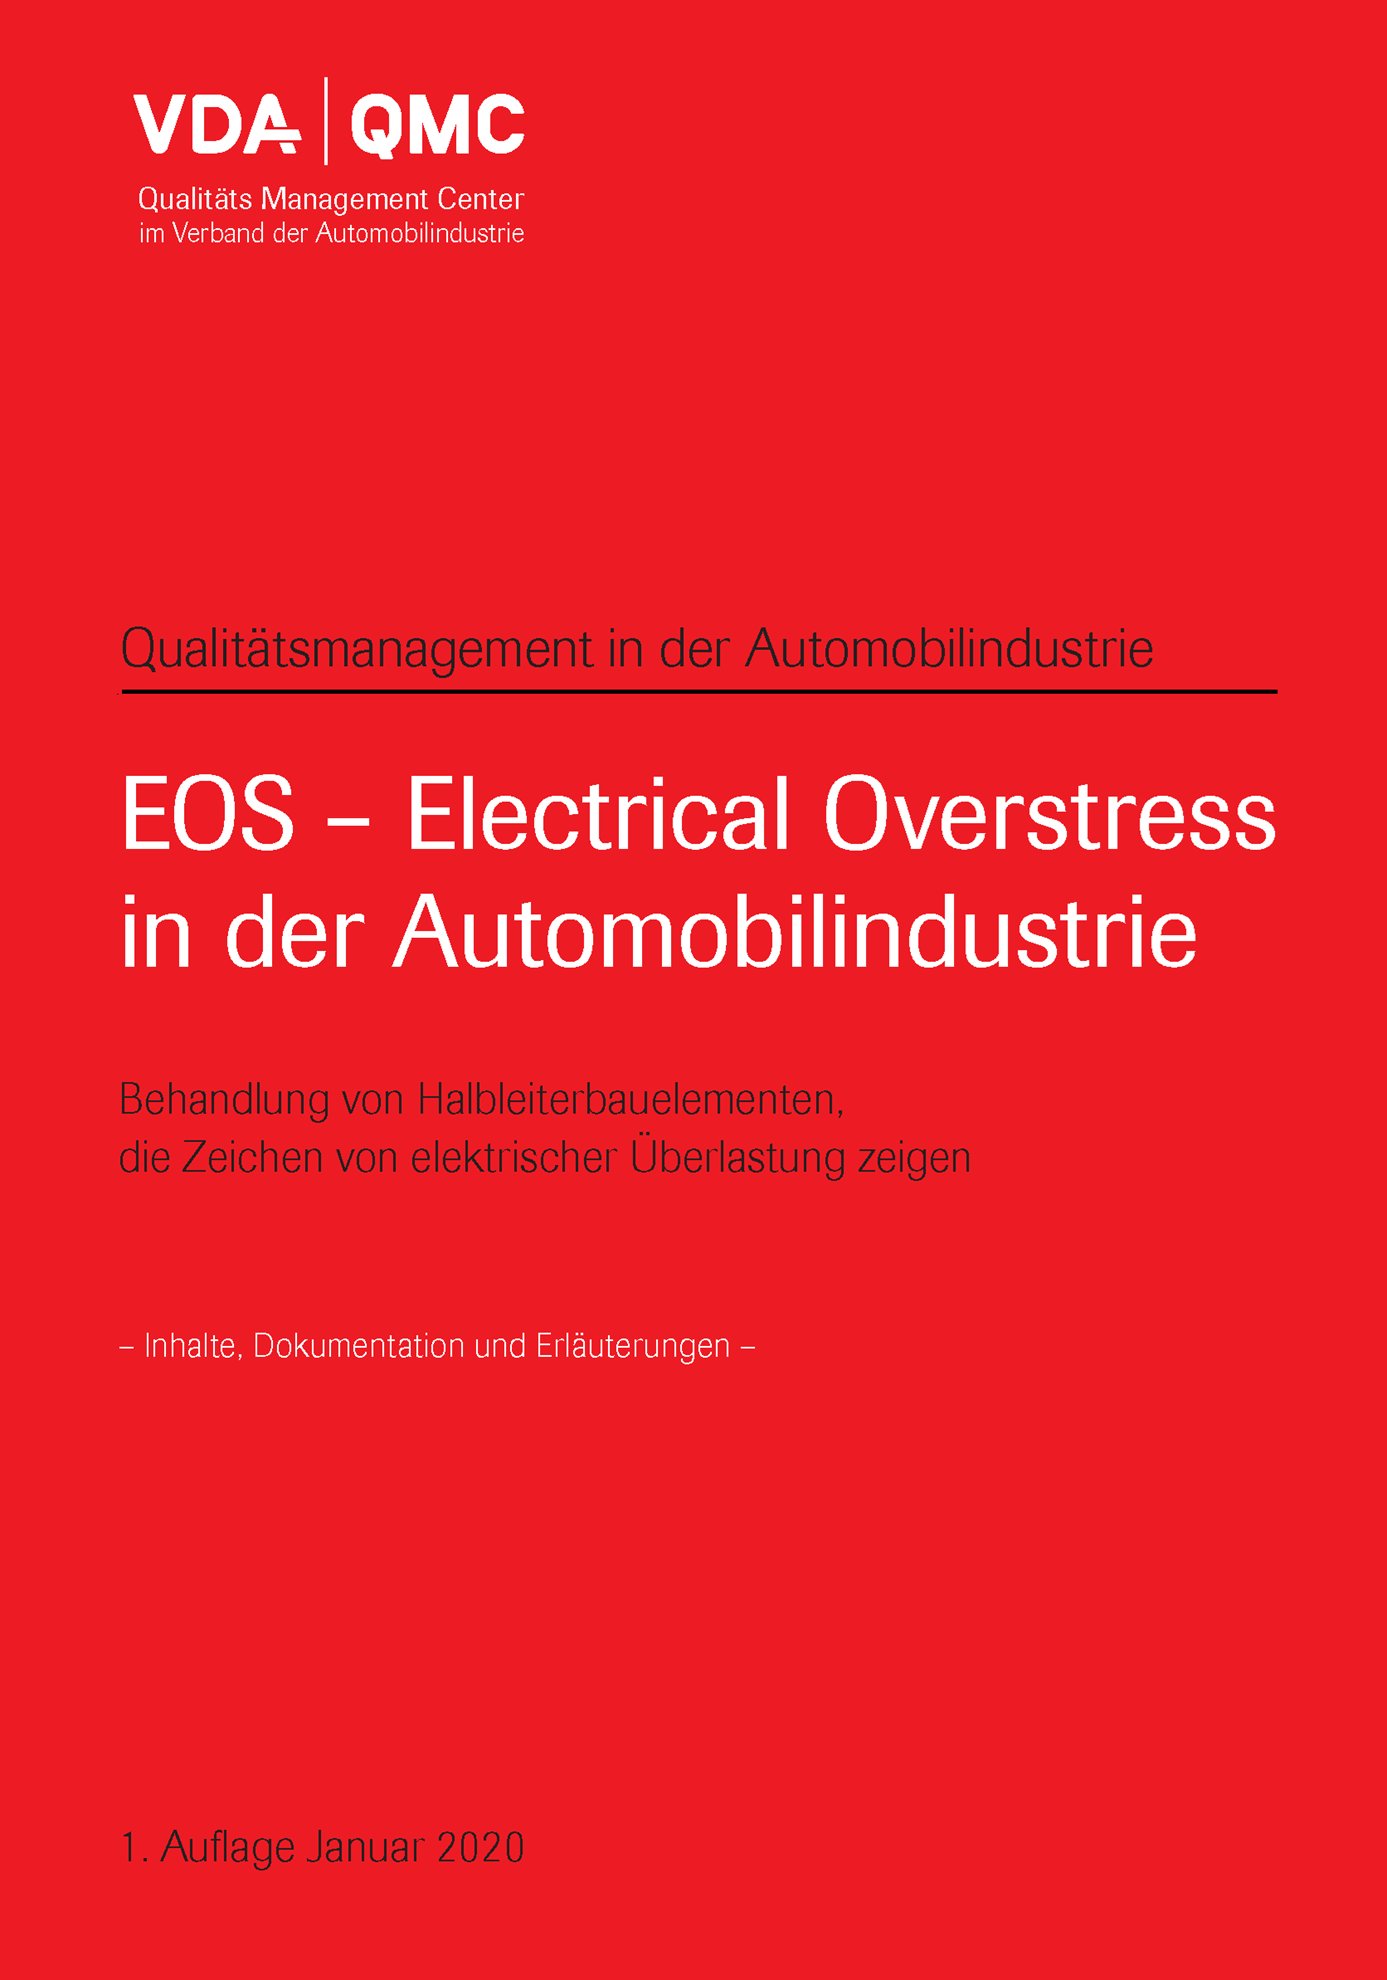 Náhľad  VDA EOS-Electrical Overstress in der Automobilindustrie, Behandlung von Halbleiterbauelementen, die Zeichen 
 von elektrischer Überlastung zeigen 
 1. Auflage, Januar 2020 1.1.2020